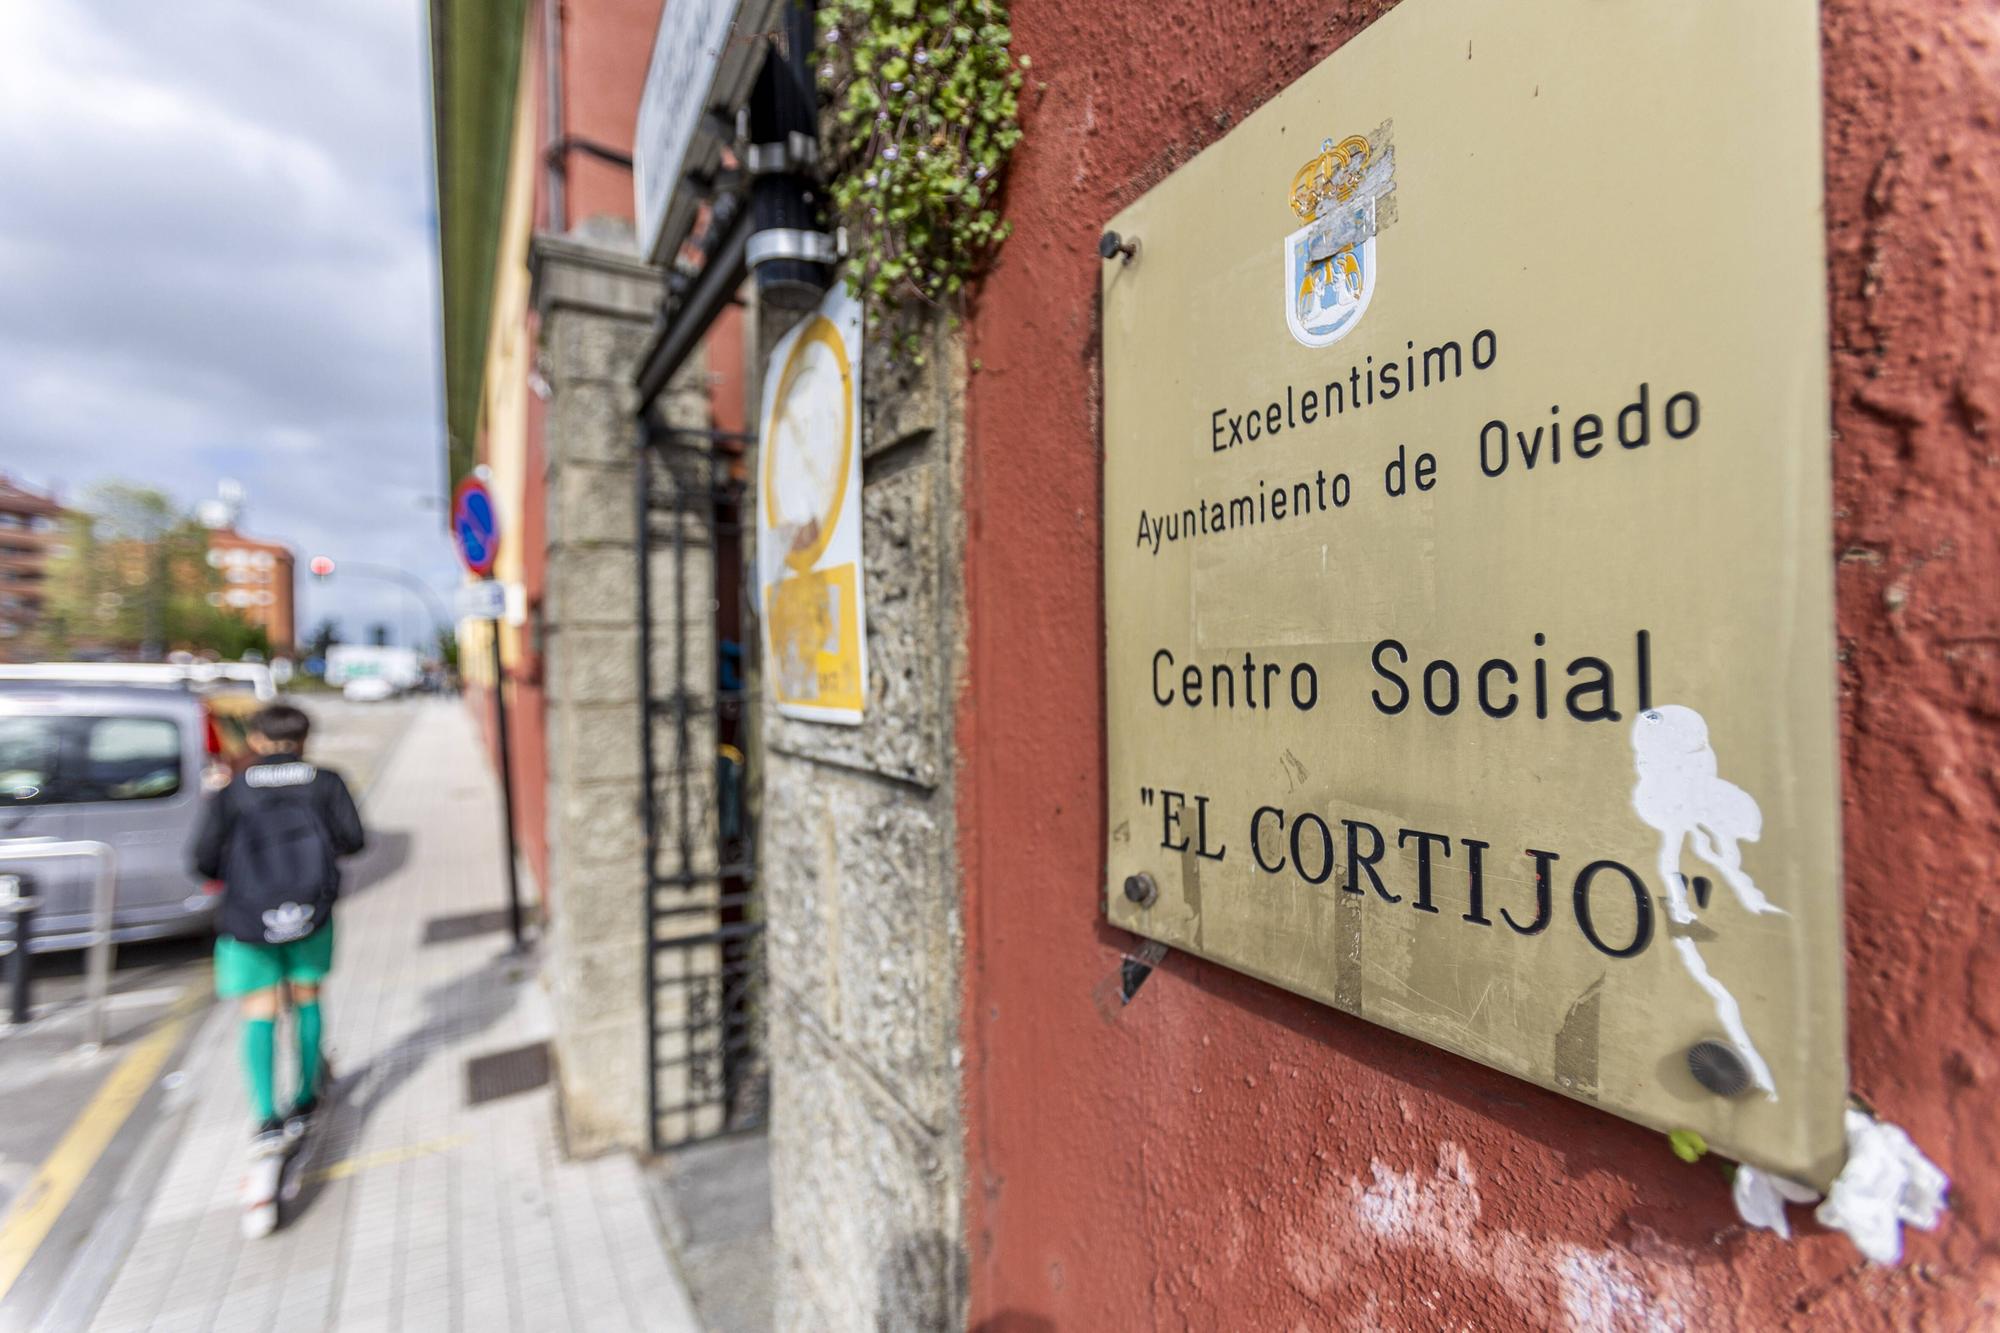 La Corredoria, una ciudad dentro de Oviedo 